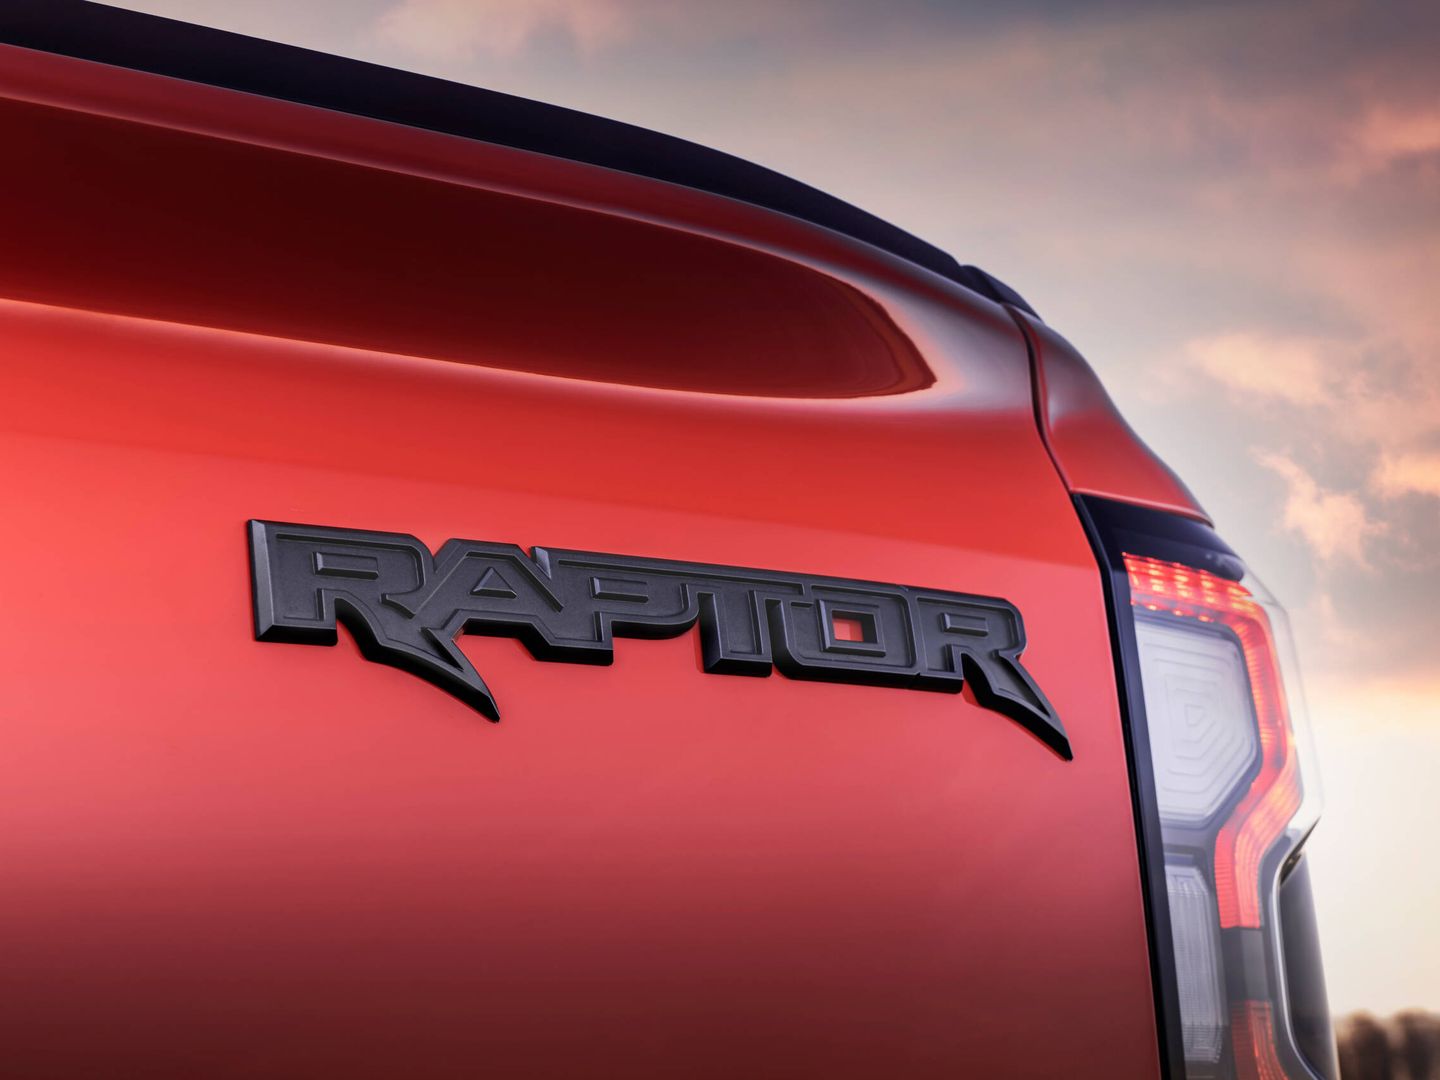 Ford denomina Raptor a sus vehículos todoterreno más prestacionales, creados por Ford Performance.